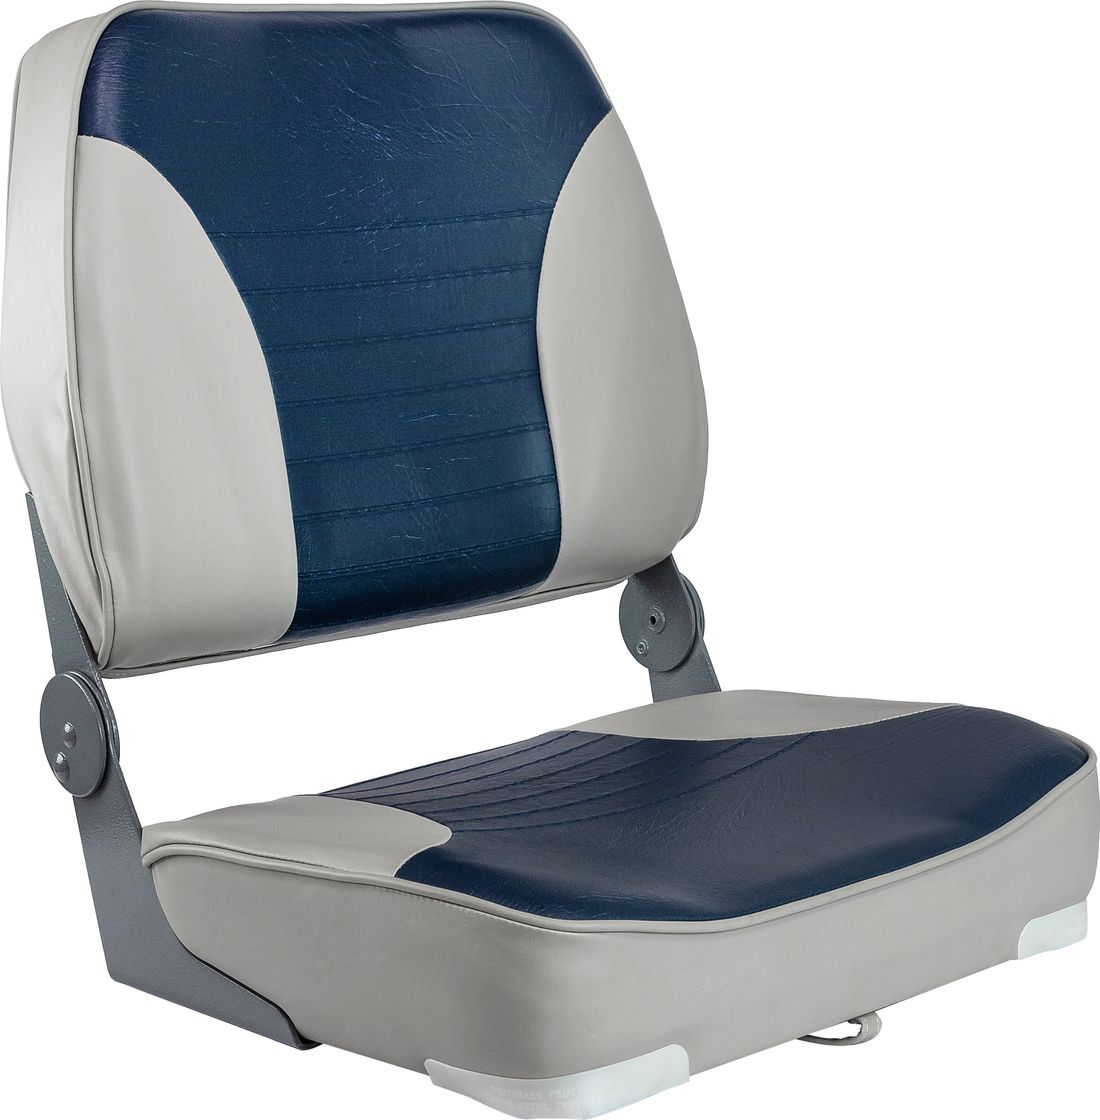 Кресло XXL складное мягкое двухцветное серый/синий 1040691 кресло складное мягкое special high back обивка серый синий винил 76236gbc